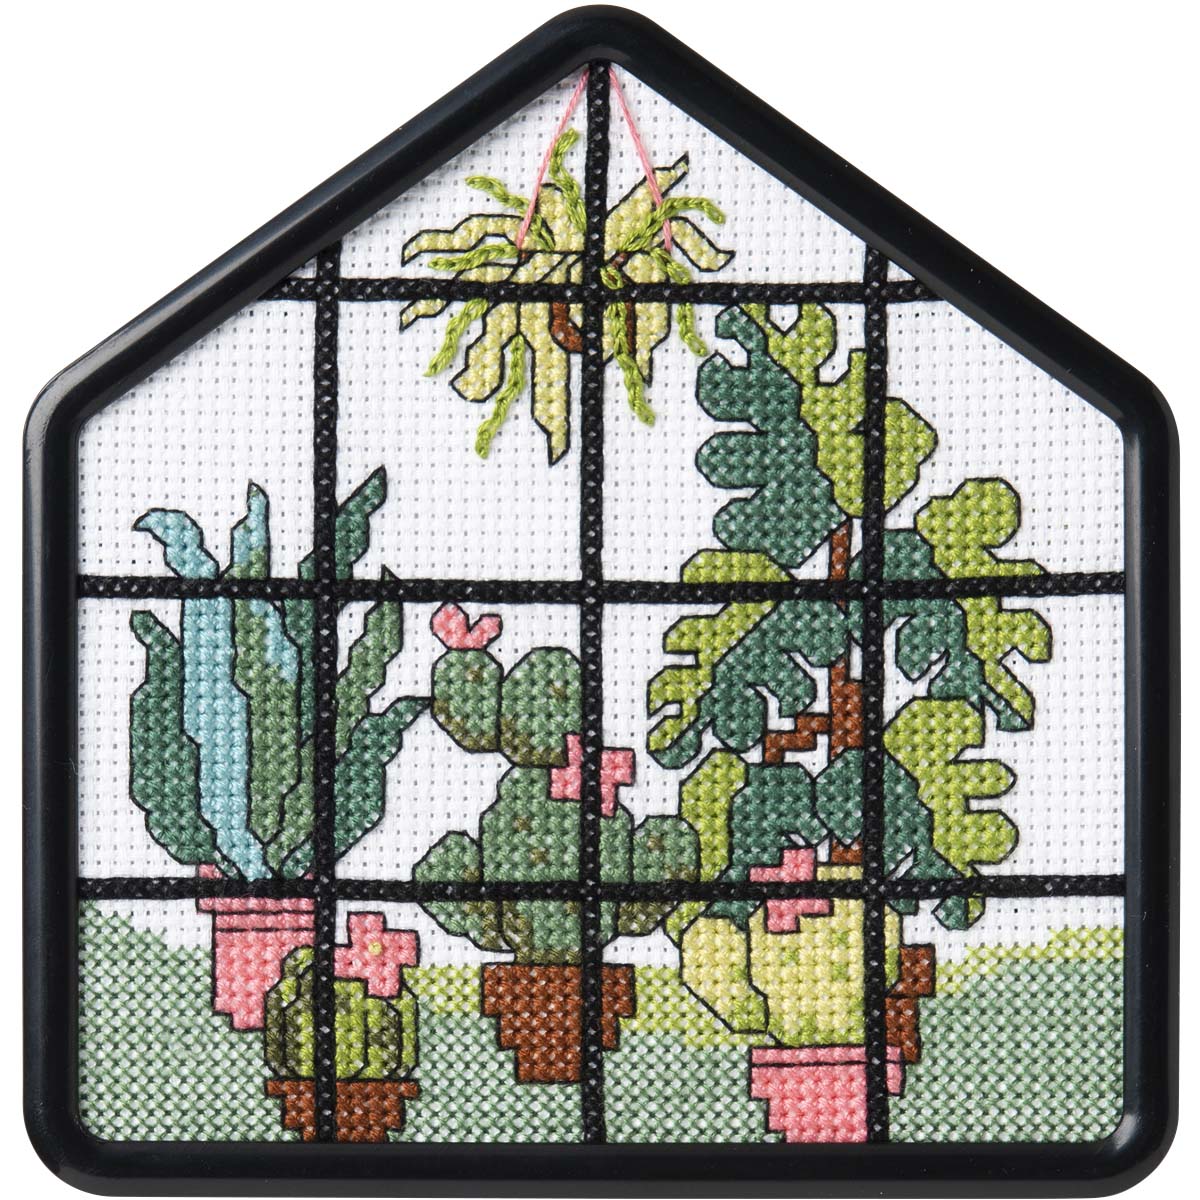 Bucilla ® My 1st Stitch™ - Counted Cross Stitch Kits - House Frame - Greenhouse - 47907E